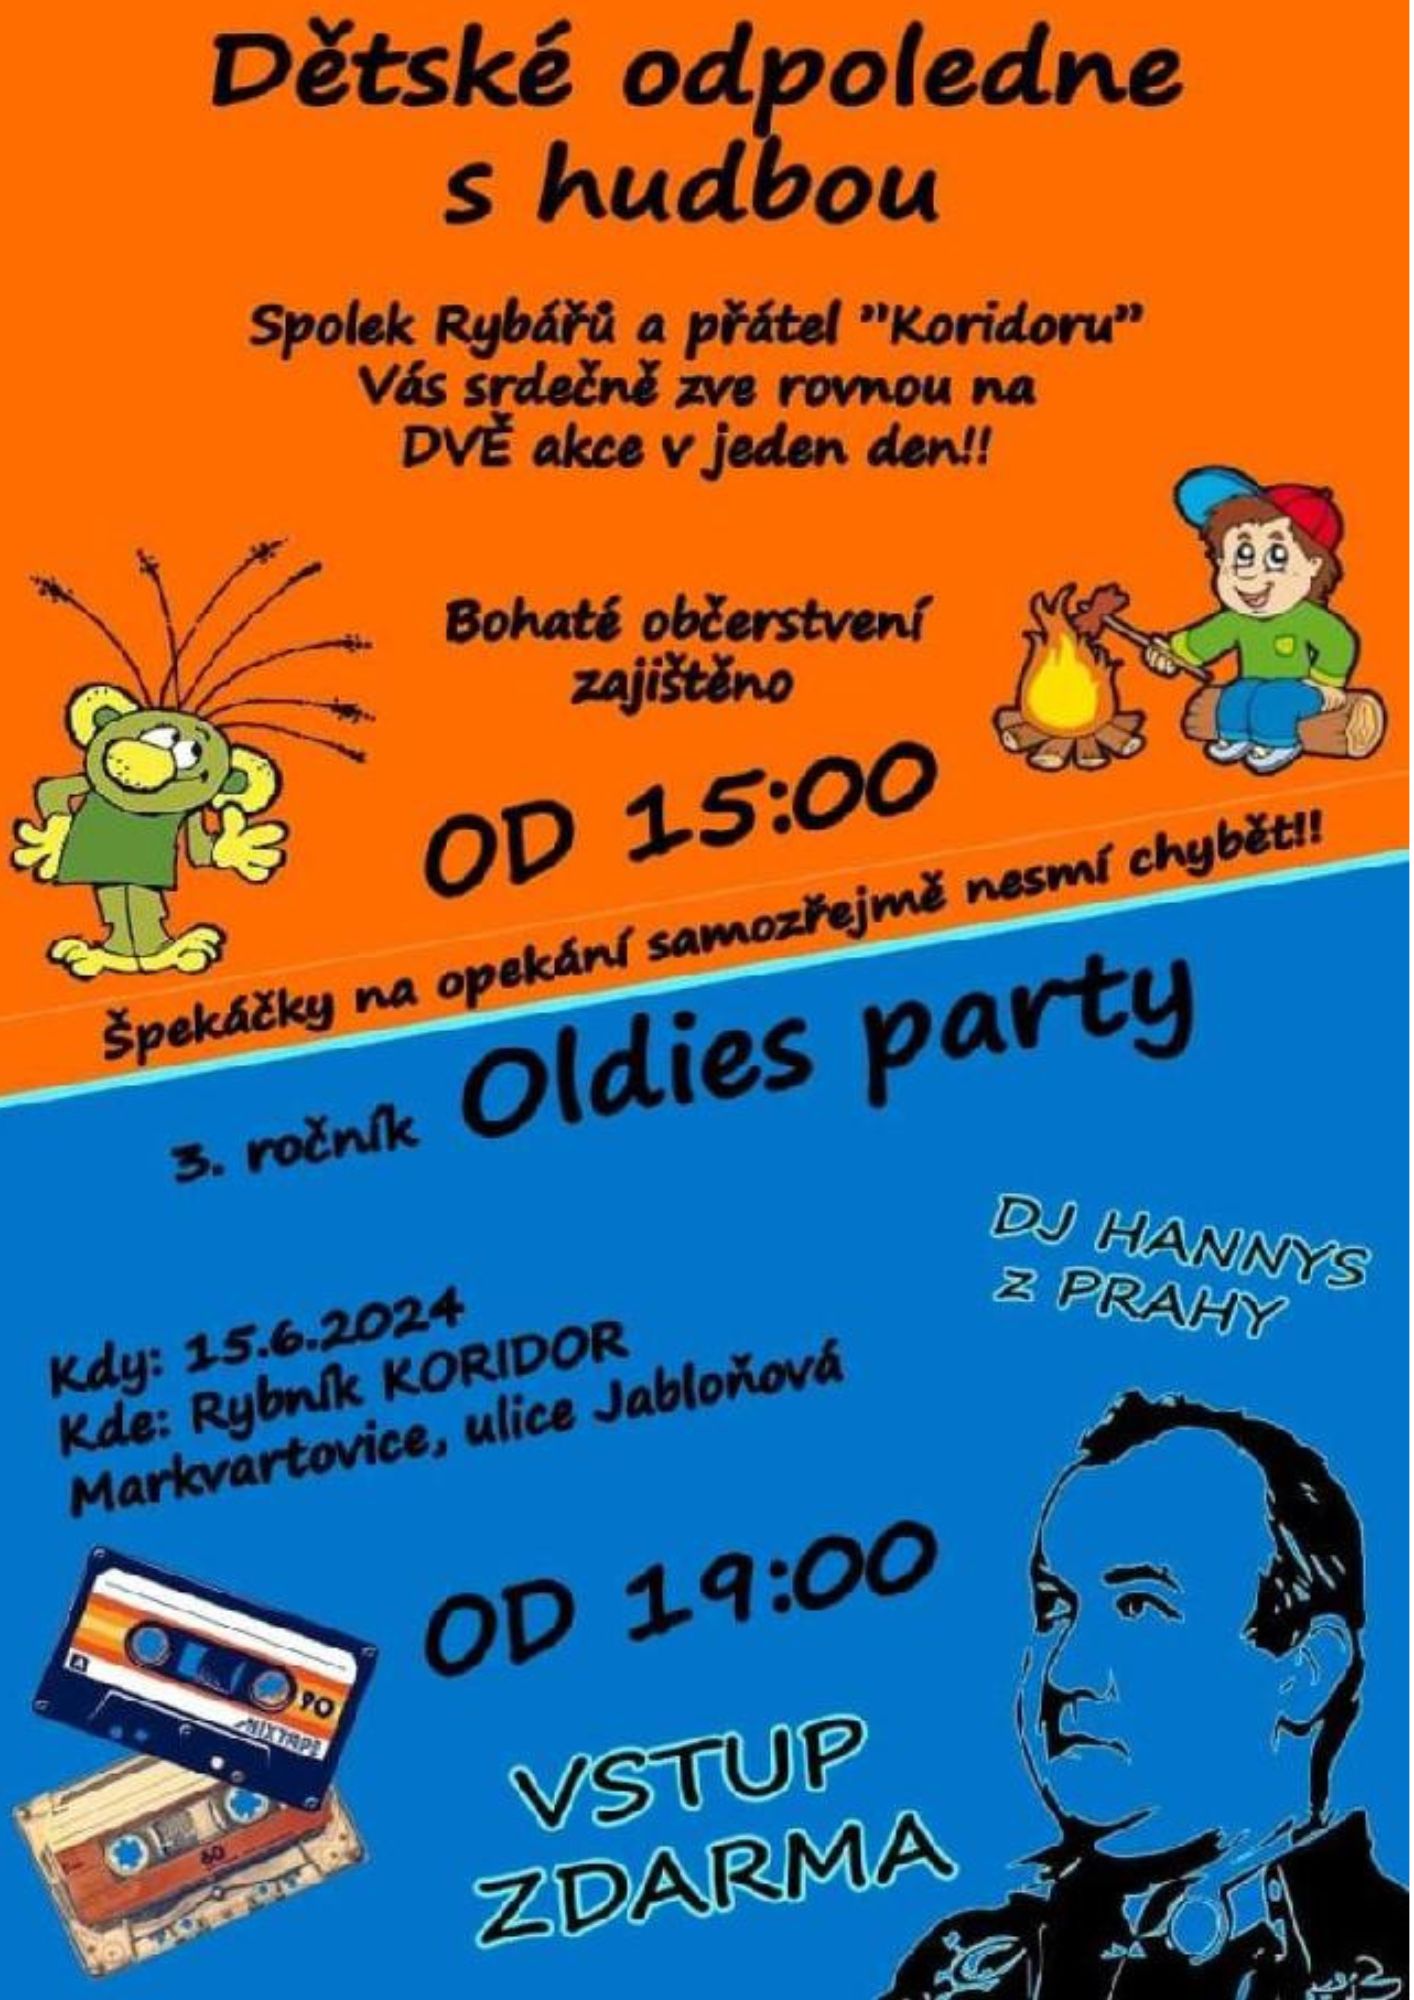 Dětské odpoledne s hudbou a Oldies party